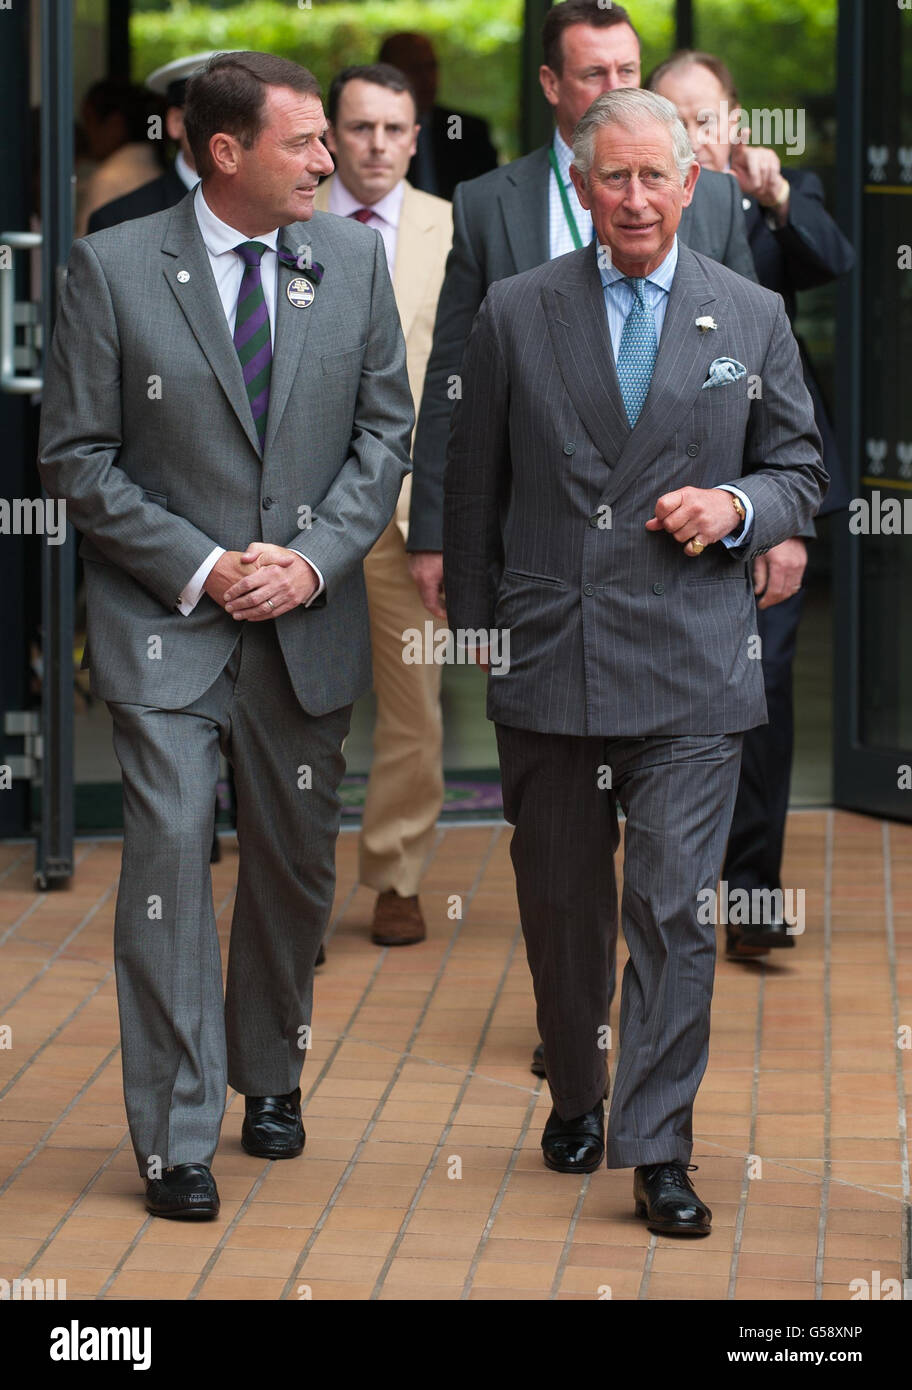 Il Principe del Galles con il Presidente dell'All England Club Philip Brook, il terzo giorno dei Campionati di Wimbledon 2012, presso l'All England Lawn Tennis Club di Wimbledon, Londra. Foto Stock